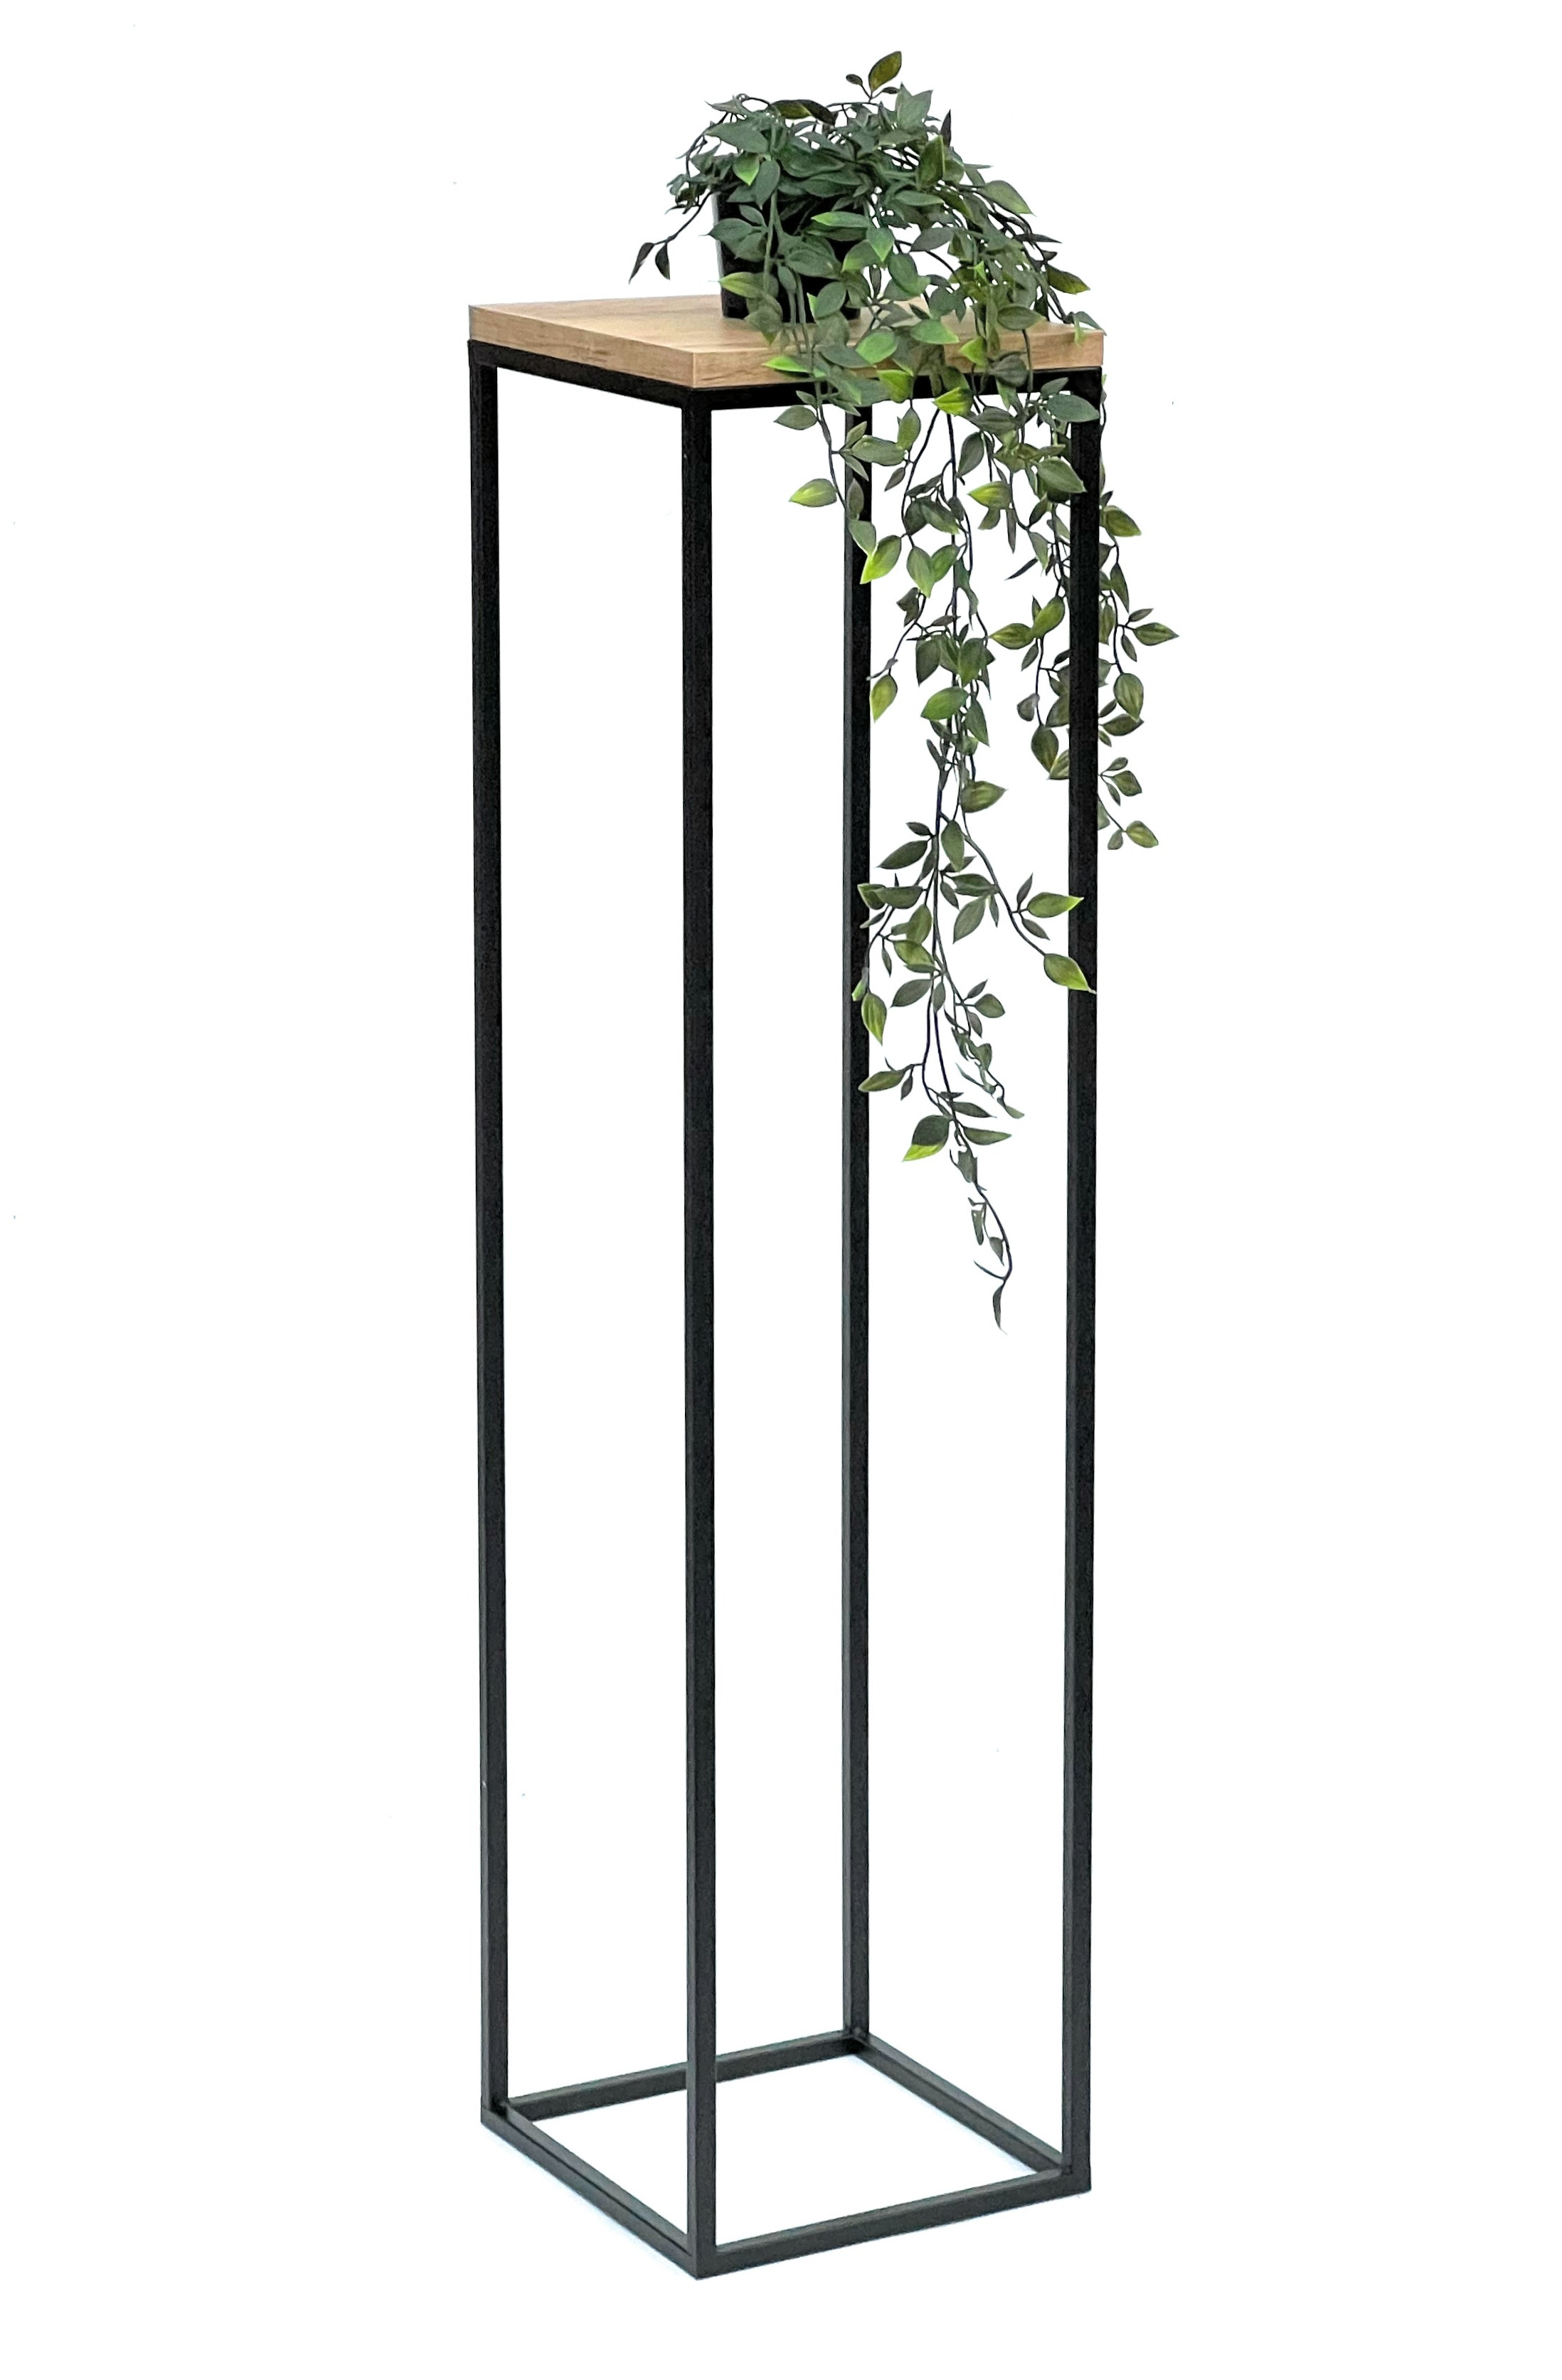 Blumenhocker Metall Holz Schwarz Eckig 100 cm Blumenständer Beistelltisch  Modern | eBay